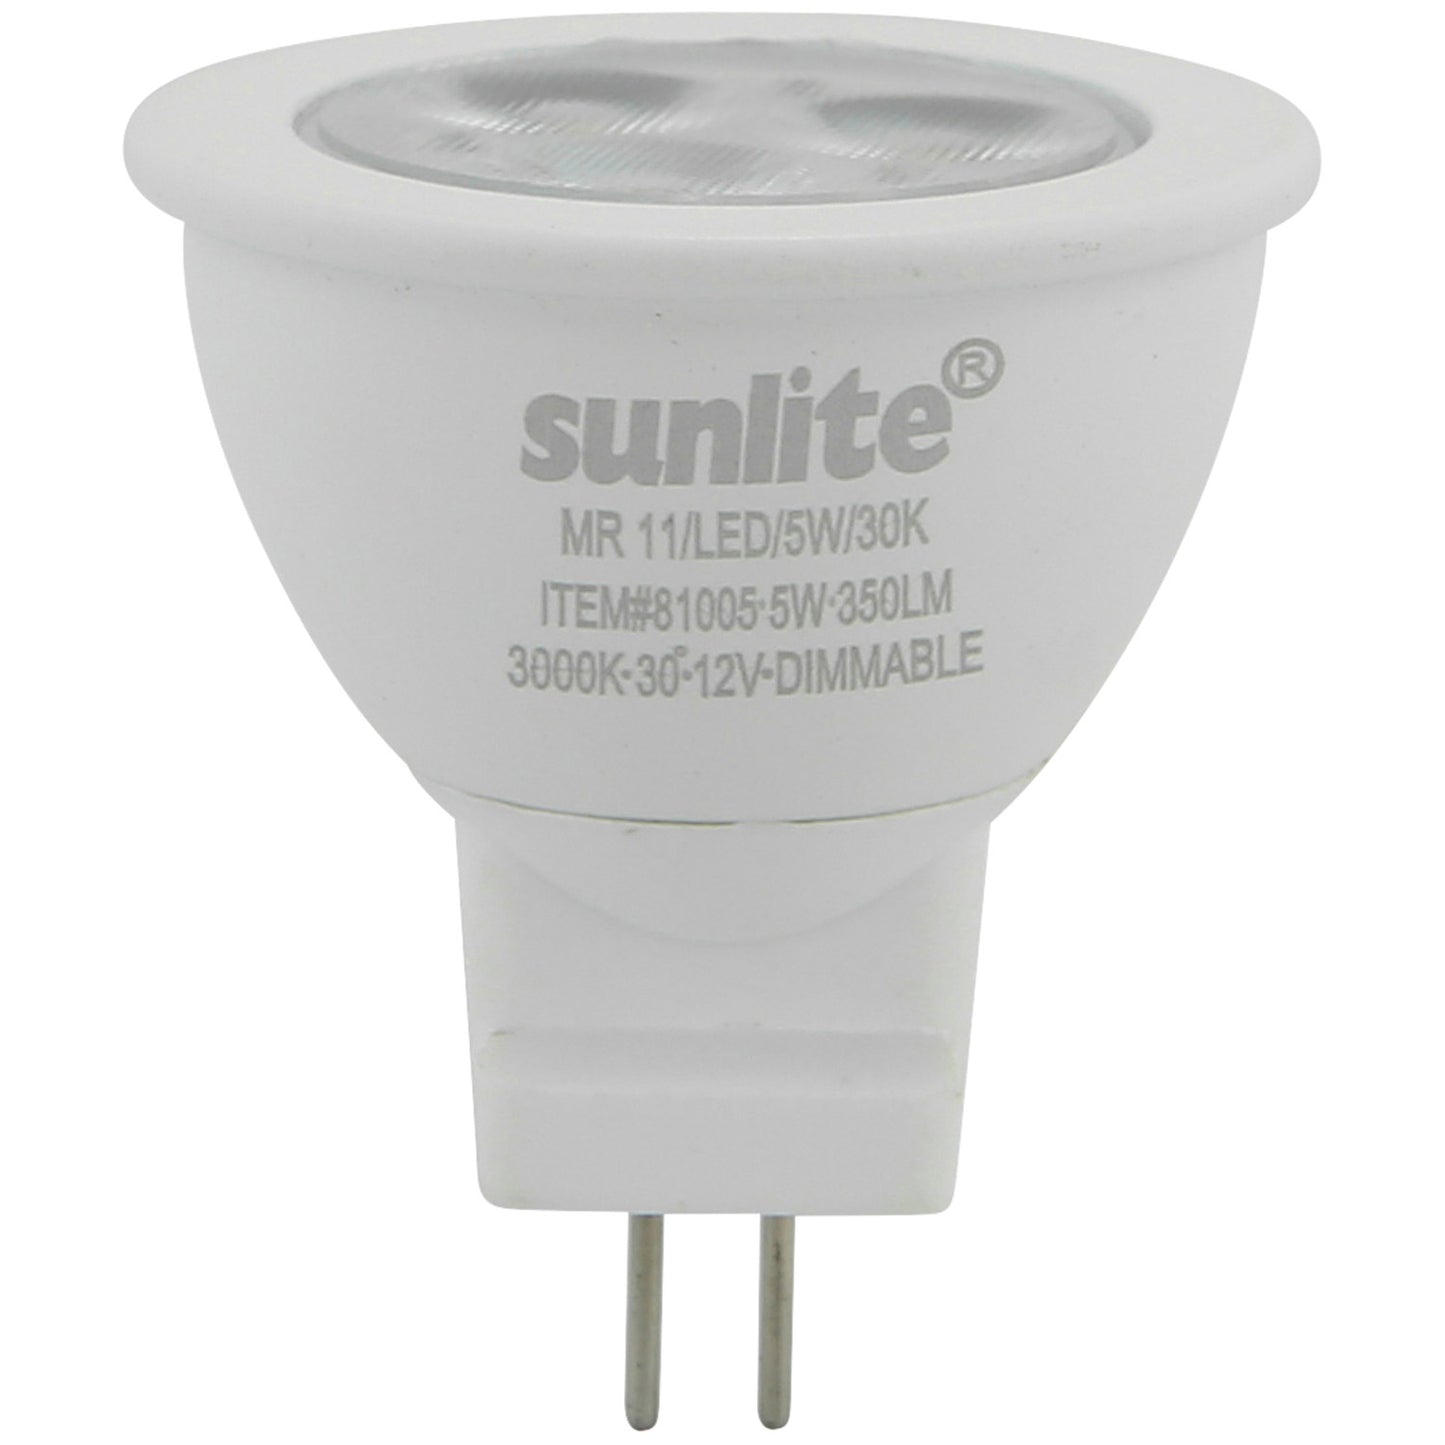 Sunlite 81005 - MR11/LED/5W/30K MR11 GU4 Base Light Bulb